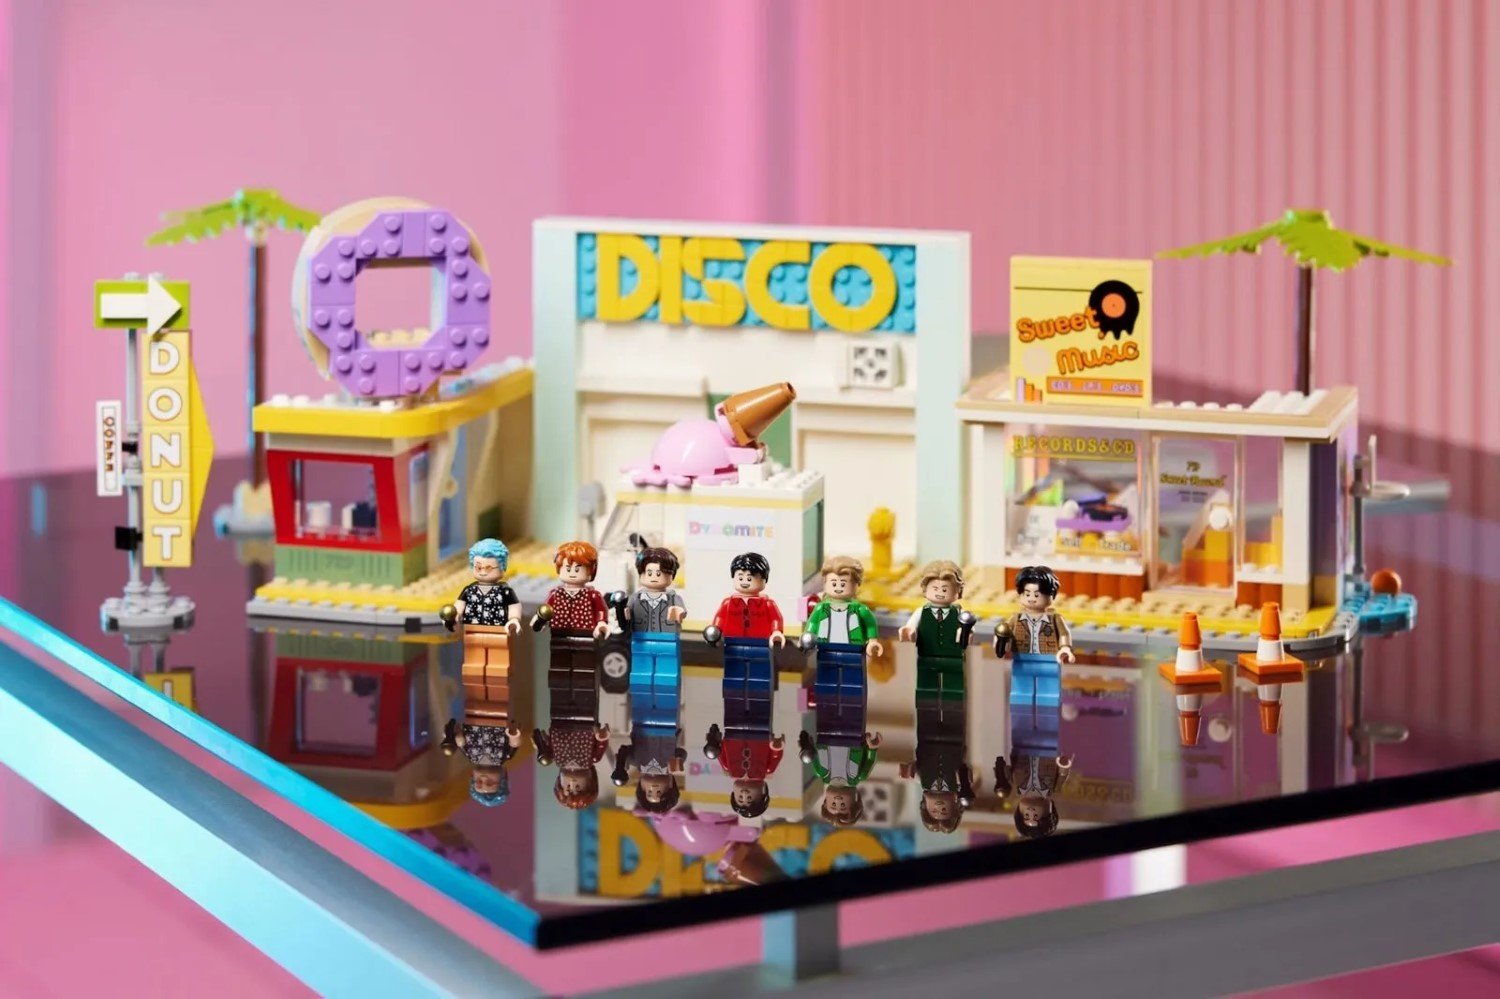 LEGO et BTS s'unissent pour une collaboration iconique